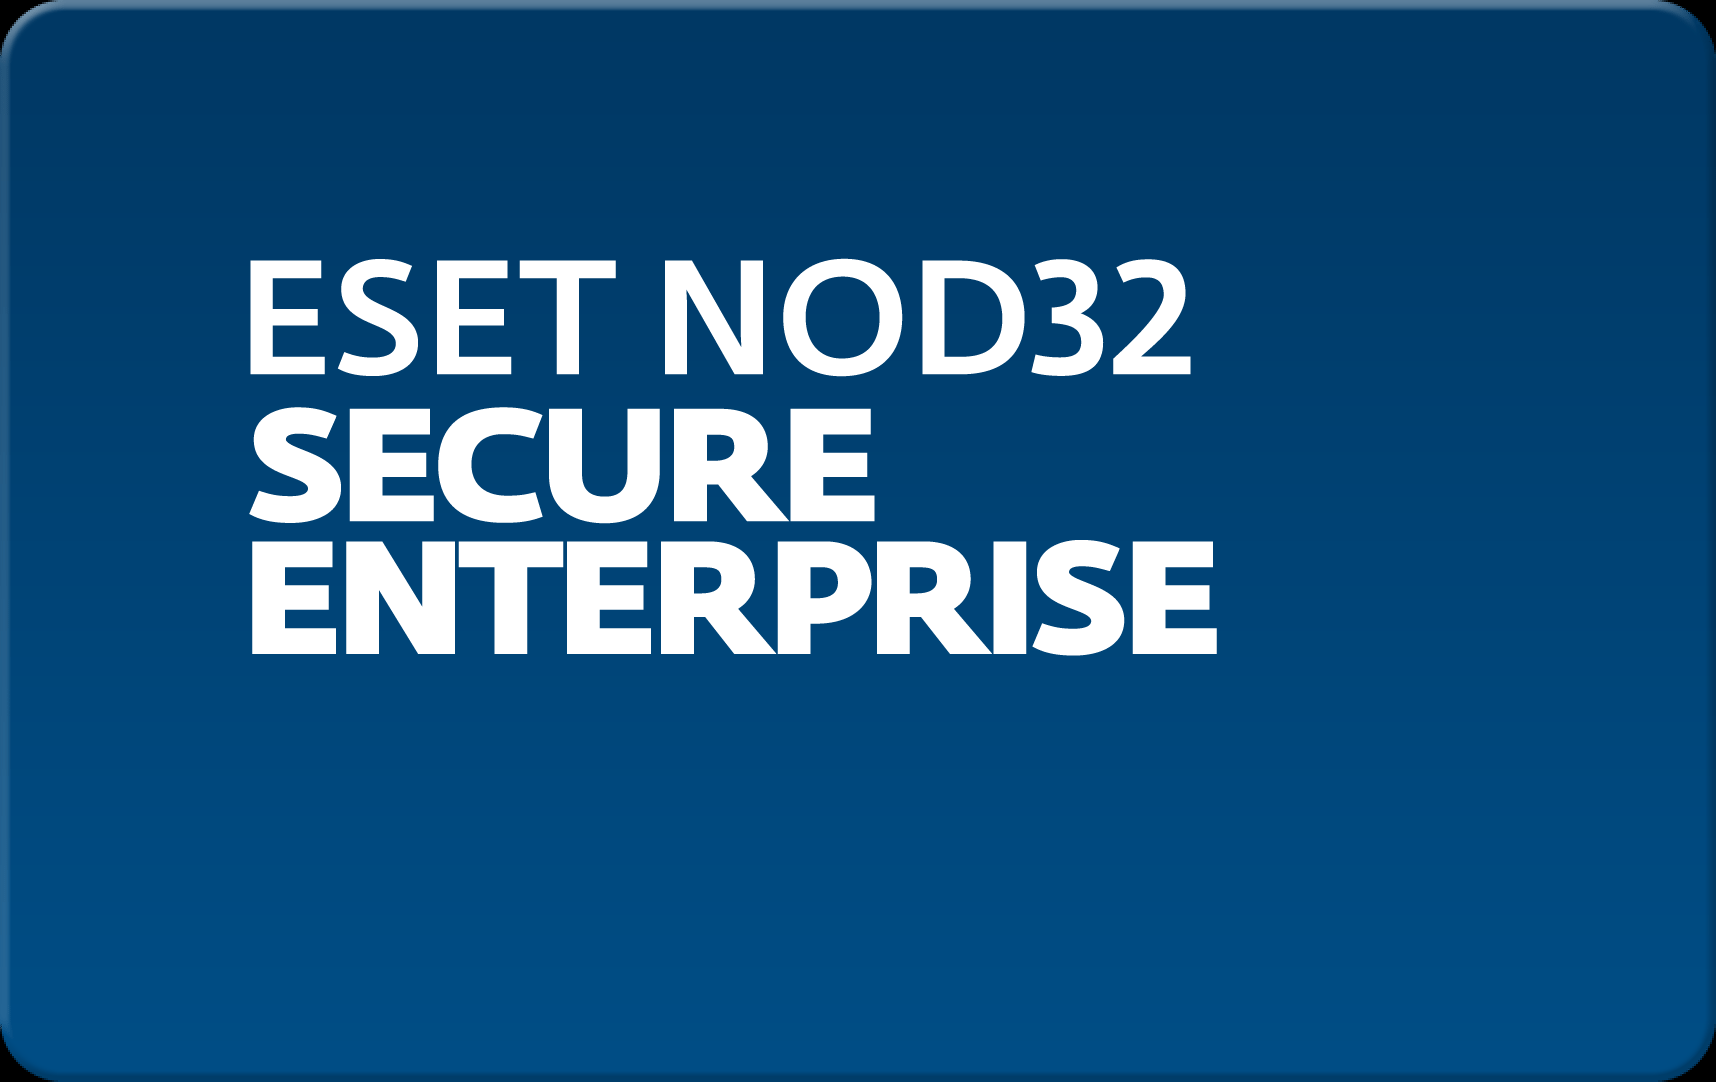        Eset NOD32 Secure Enterprise  192 